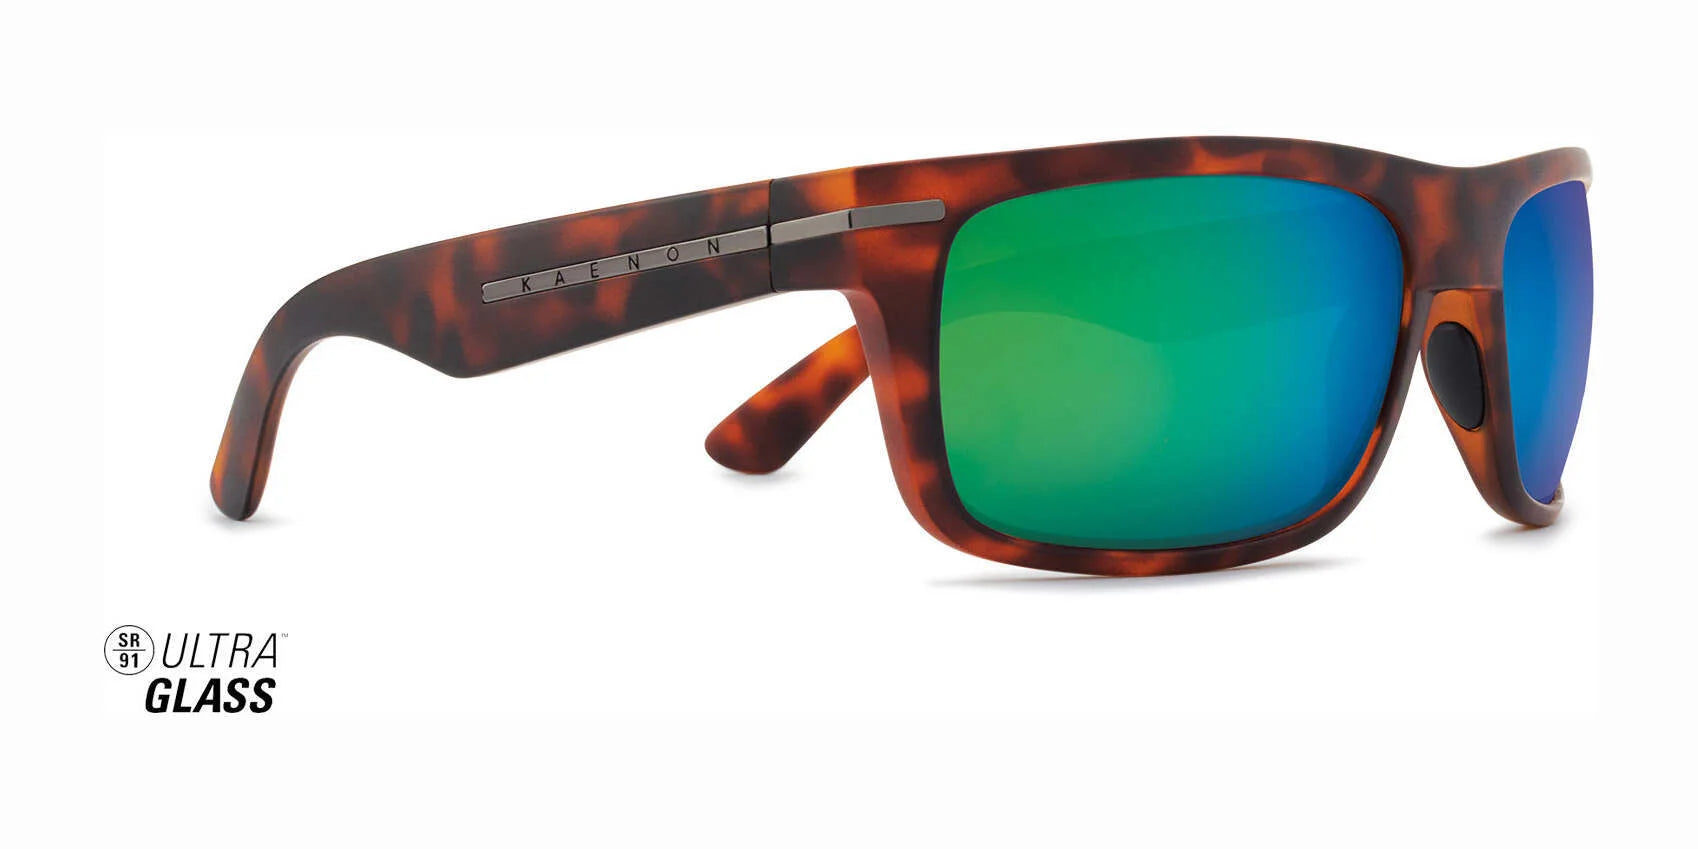 Kaenon BURNET ULTRA GLASS Sunglasses 199 / Matte Tortoise